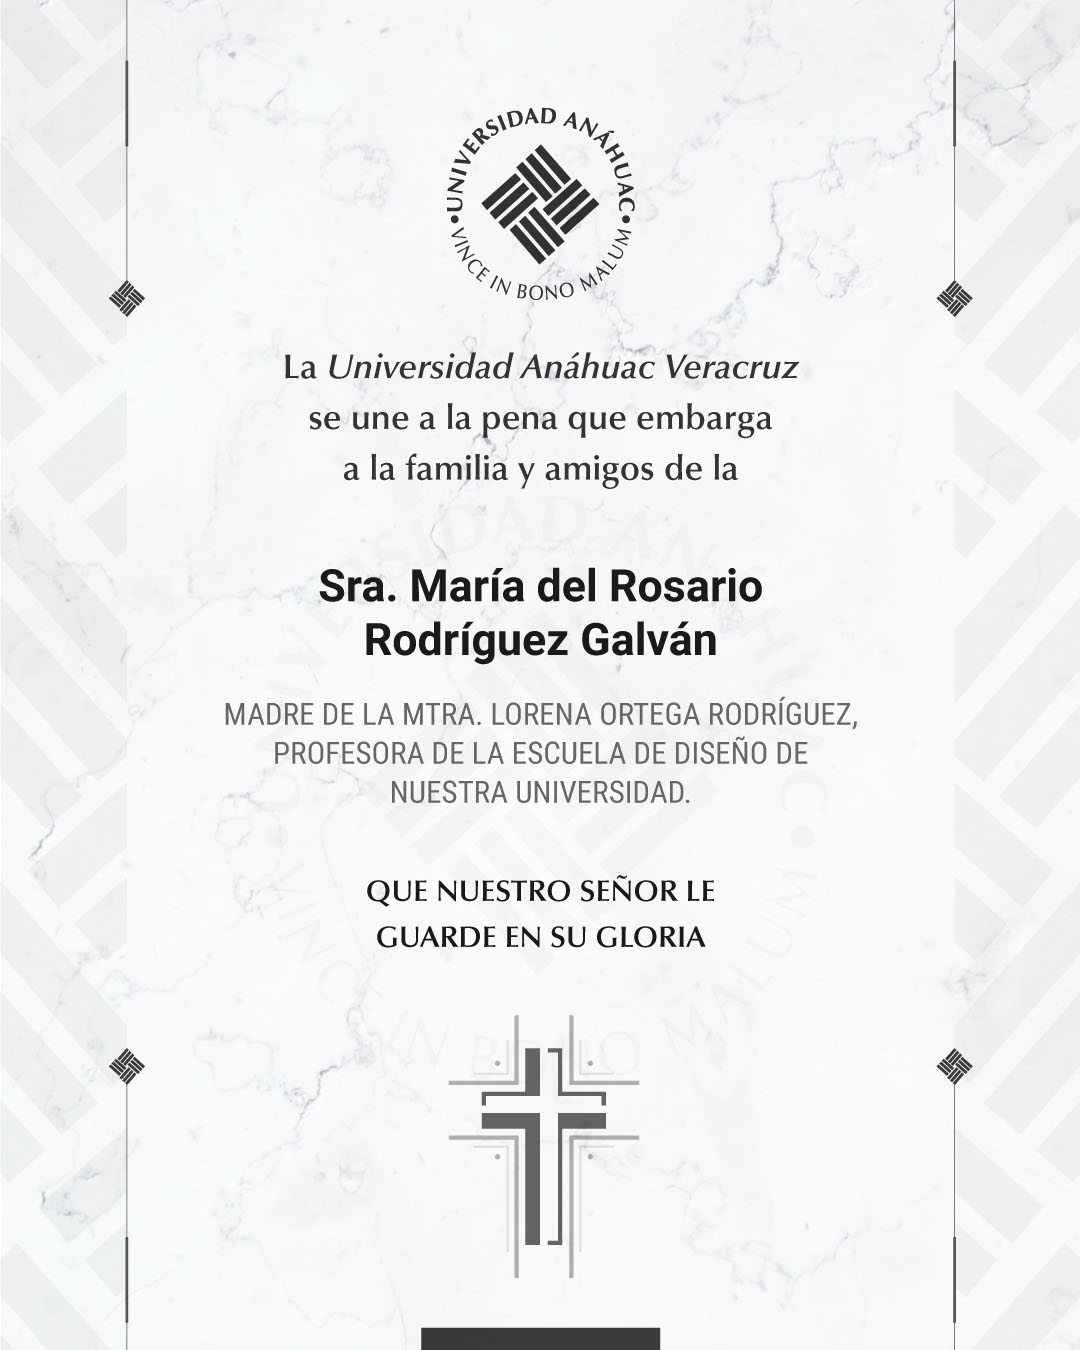 6 / 18 - Sra. María del Rosario Rodríguez Galván